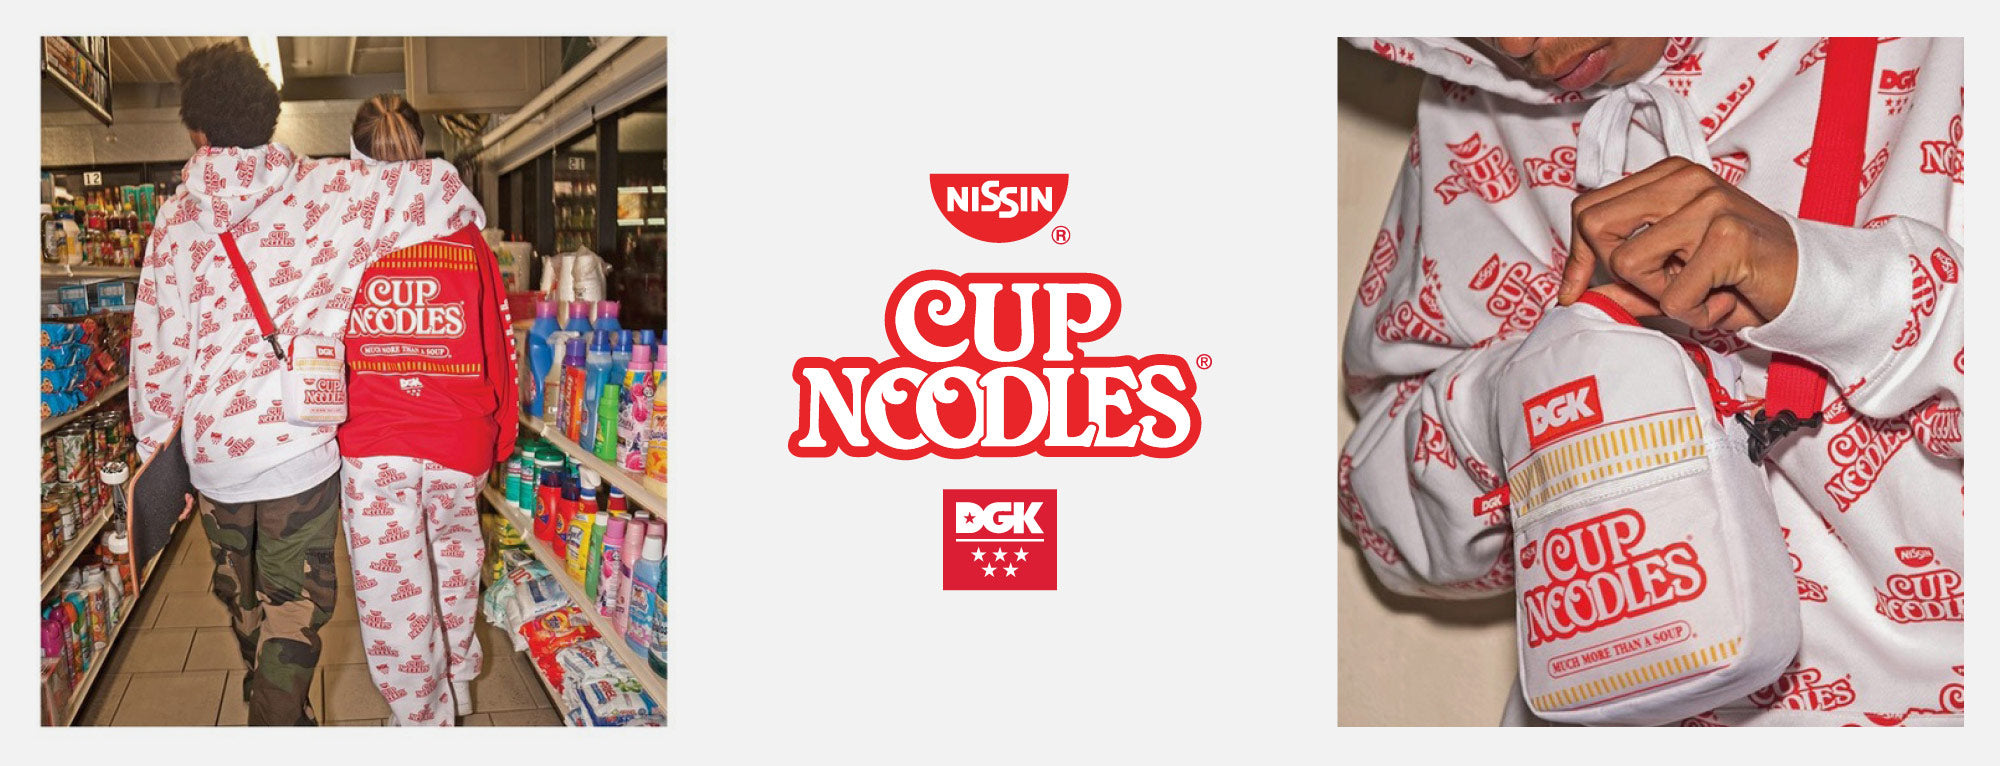 DGK x Cup Noodles Collaboration